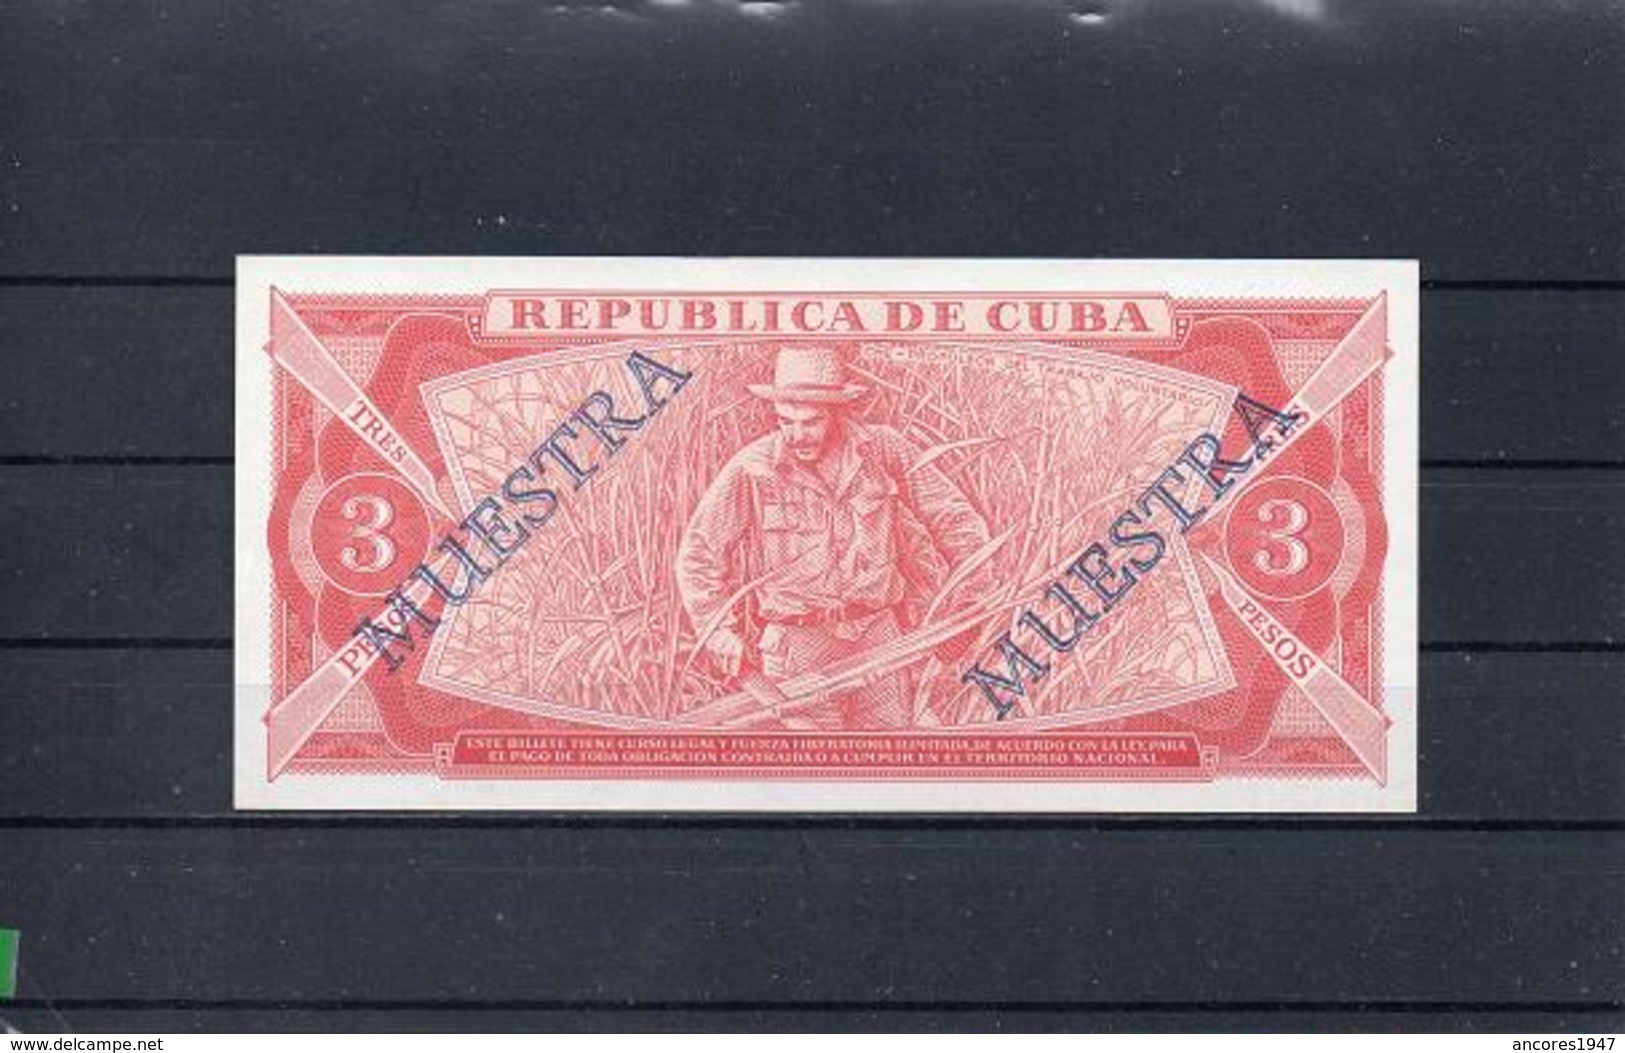 CUBA 1989, 3.PESOS, PK-107bs, SC-UNC, 2 ESCANER - Cuba